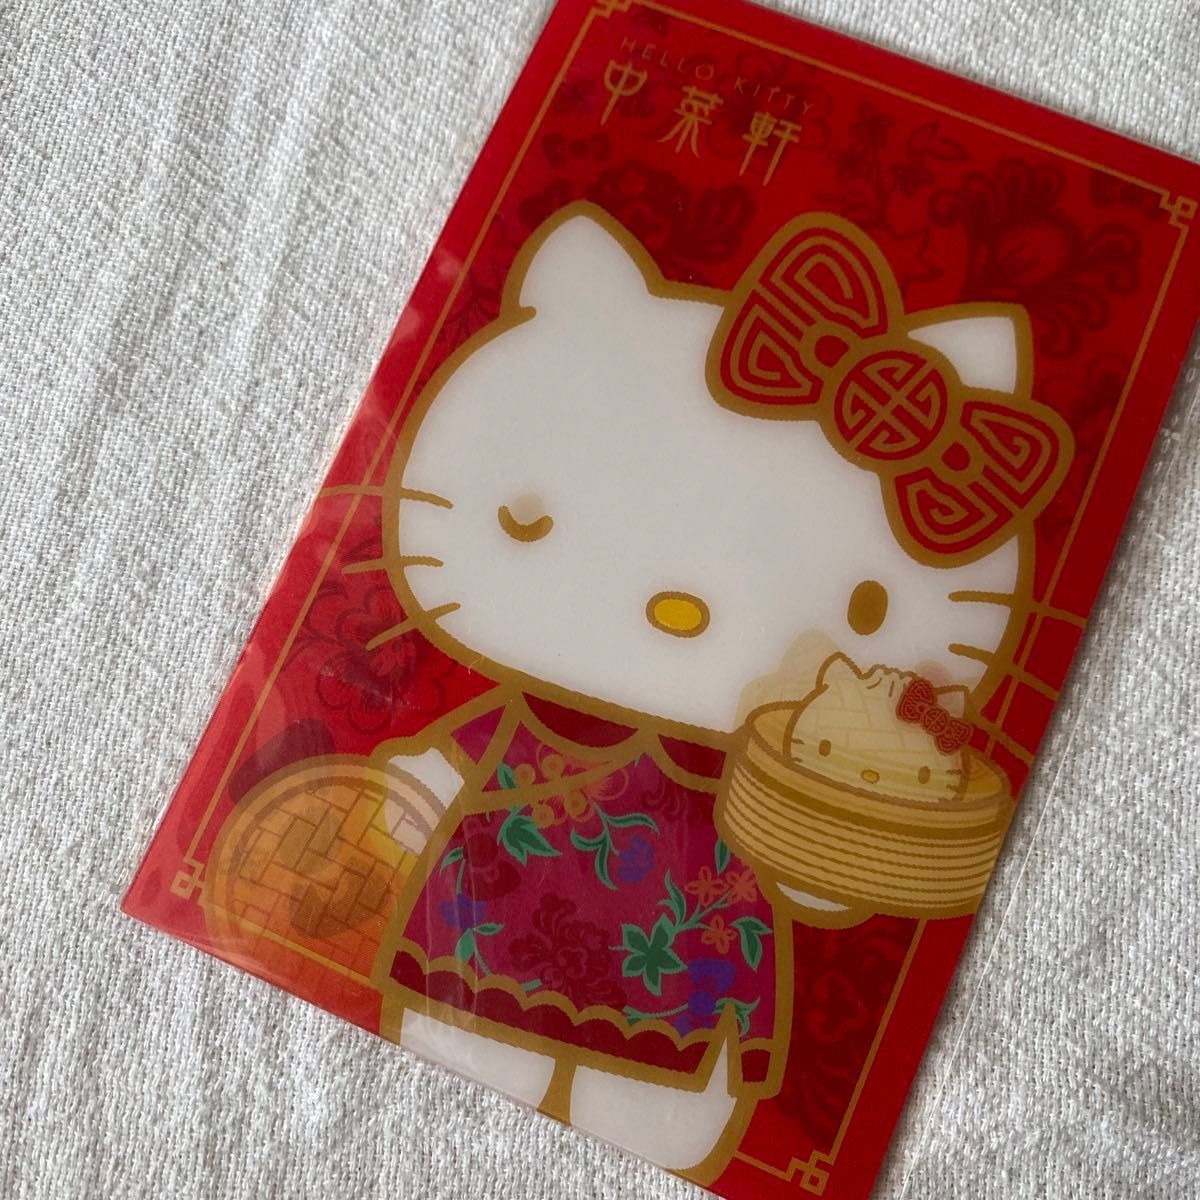 香港 キティ飲茶店 中菜軒 うちわ ポストカード リーフレット セット Hello Kitty Chinese Cuisine